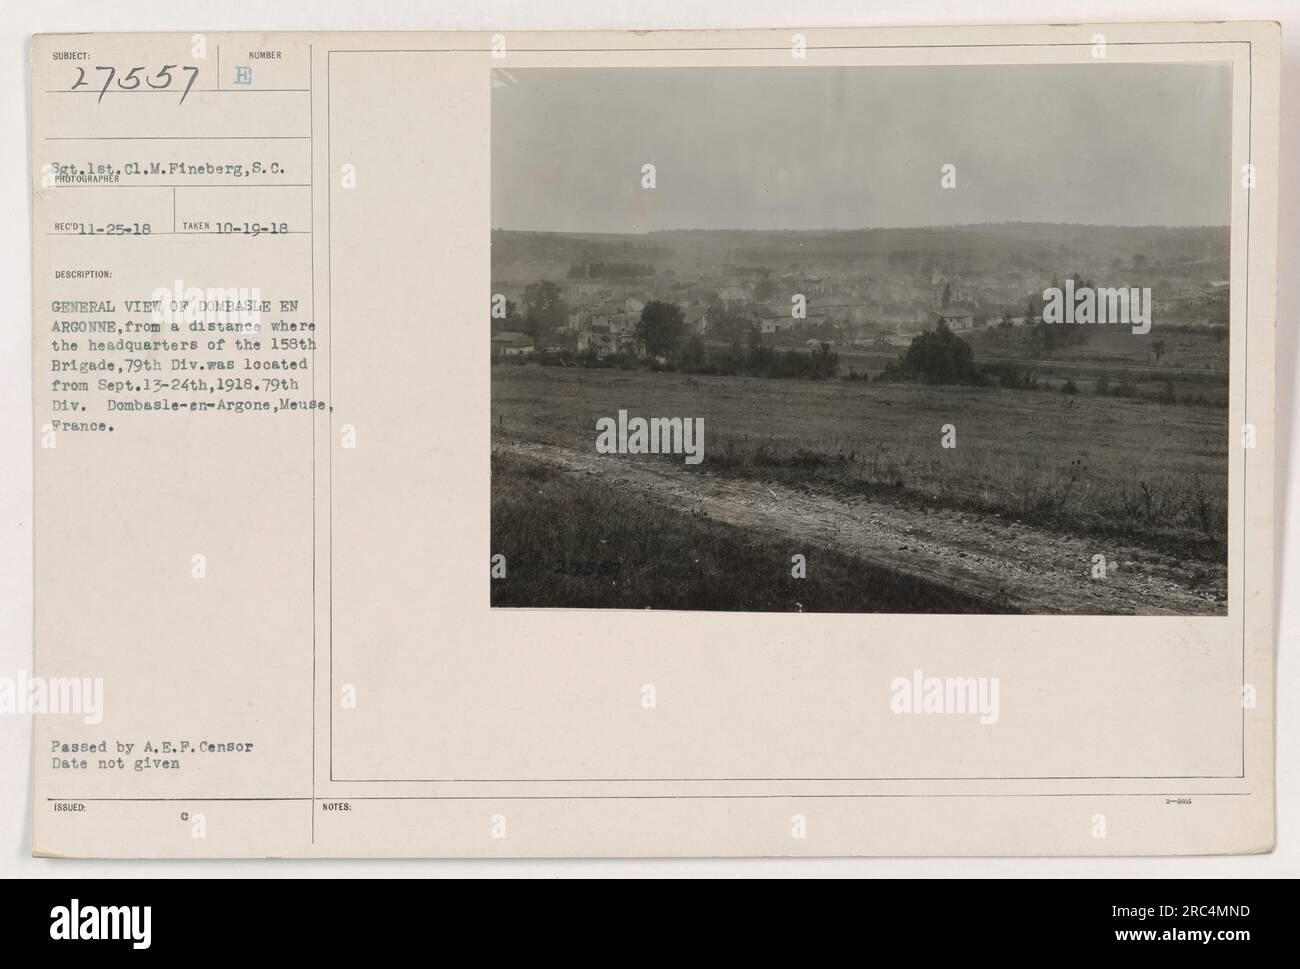 Allgemeiner Überblick über Dombasle-en-Argonne, wo sich der Hauptsitz der 158. Brigade, 79. Division vom 13. Bis 24. September 1918 befand. Dieses Foto zeigt die Landschaft und Strukturen in der Gegend während des Ersten Weltkriegs Aufgenommen am 19. Oktober 1918 von Sgt 1. Cl. M. Fineberg. Stockfoto